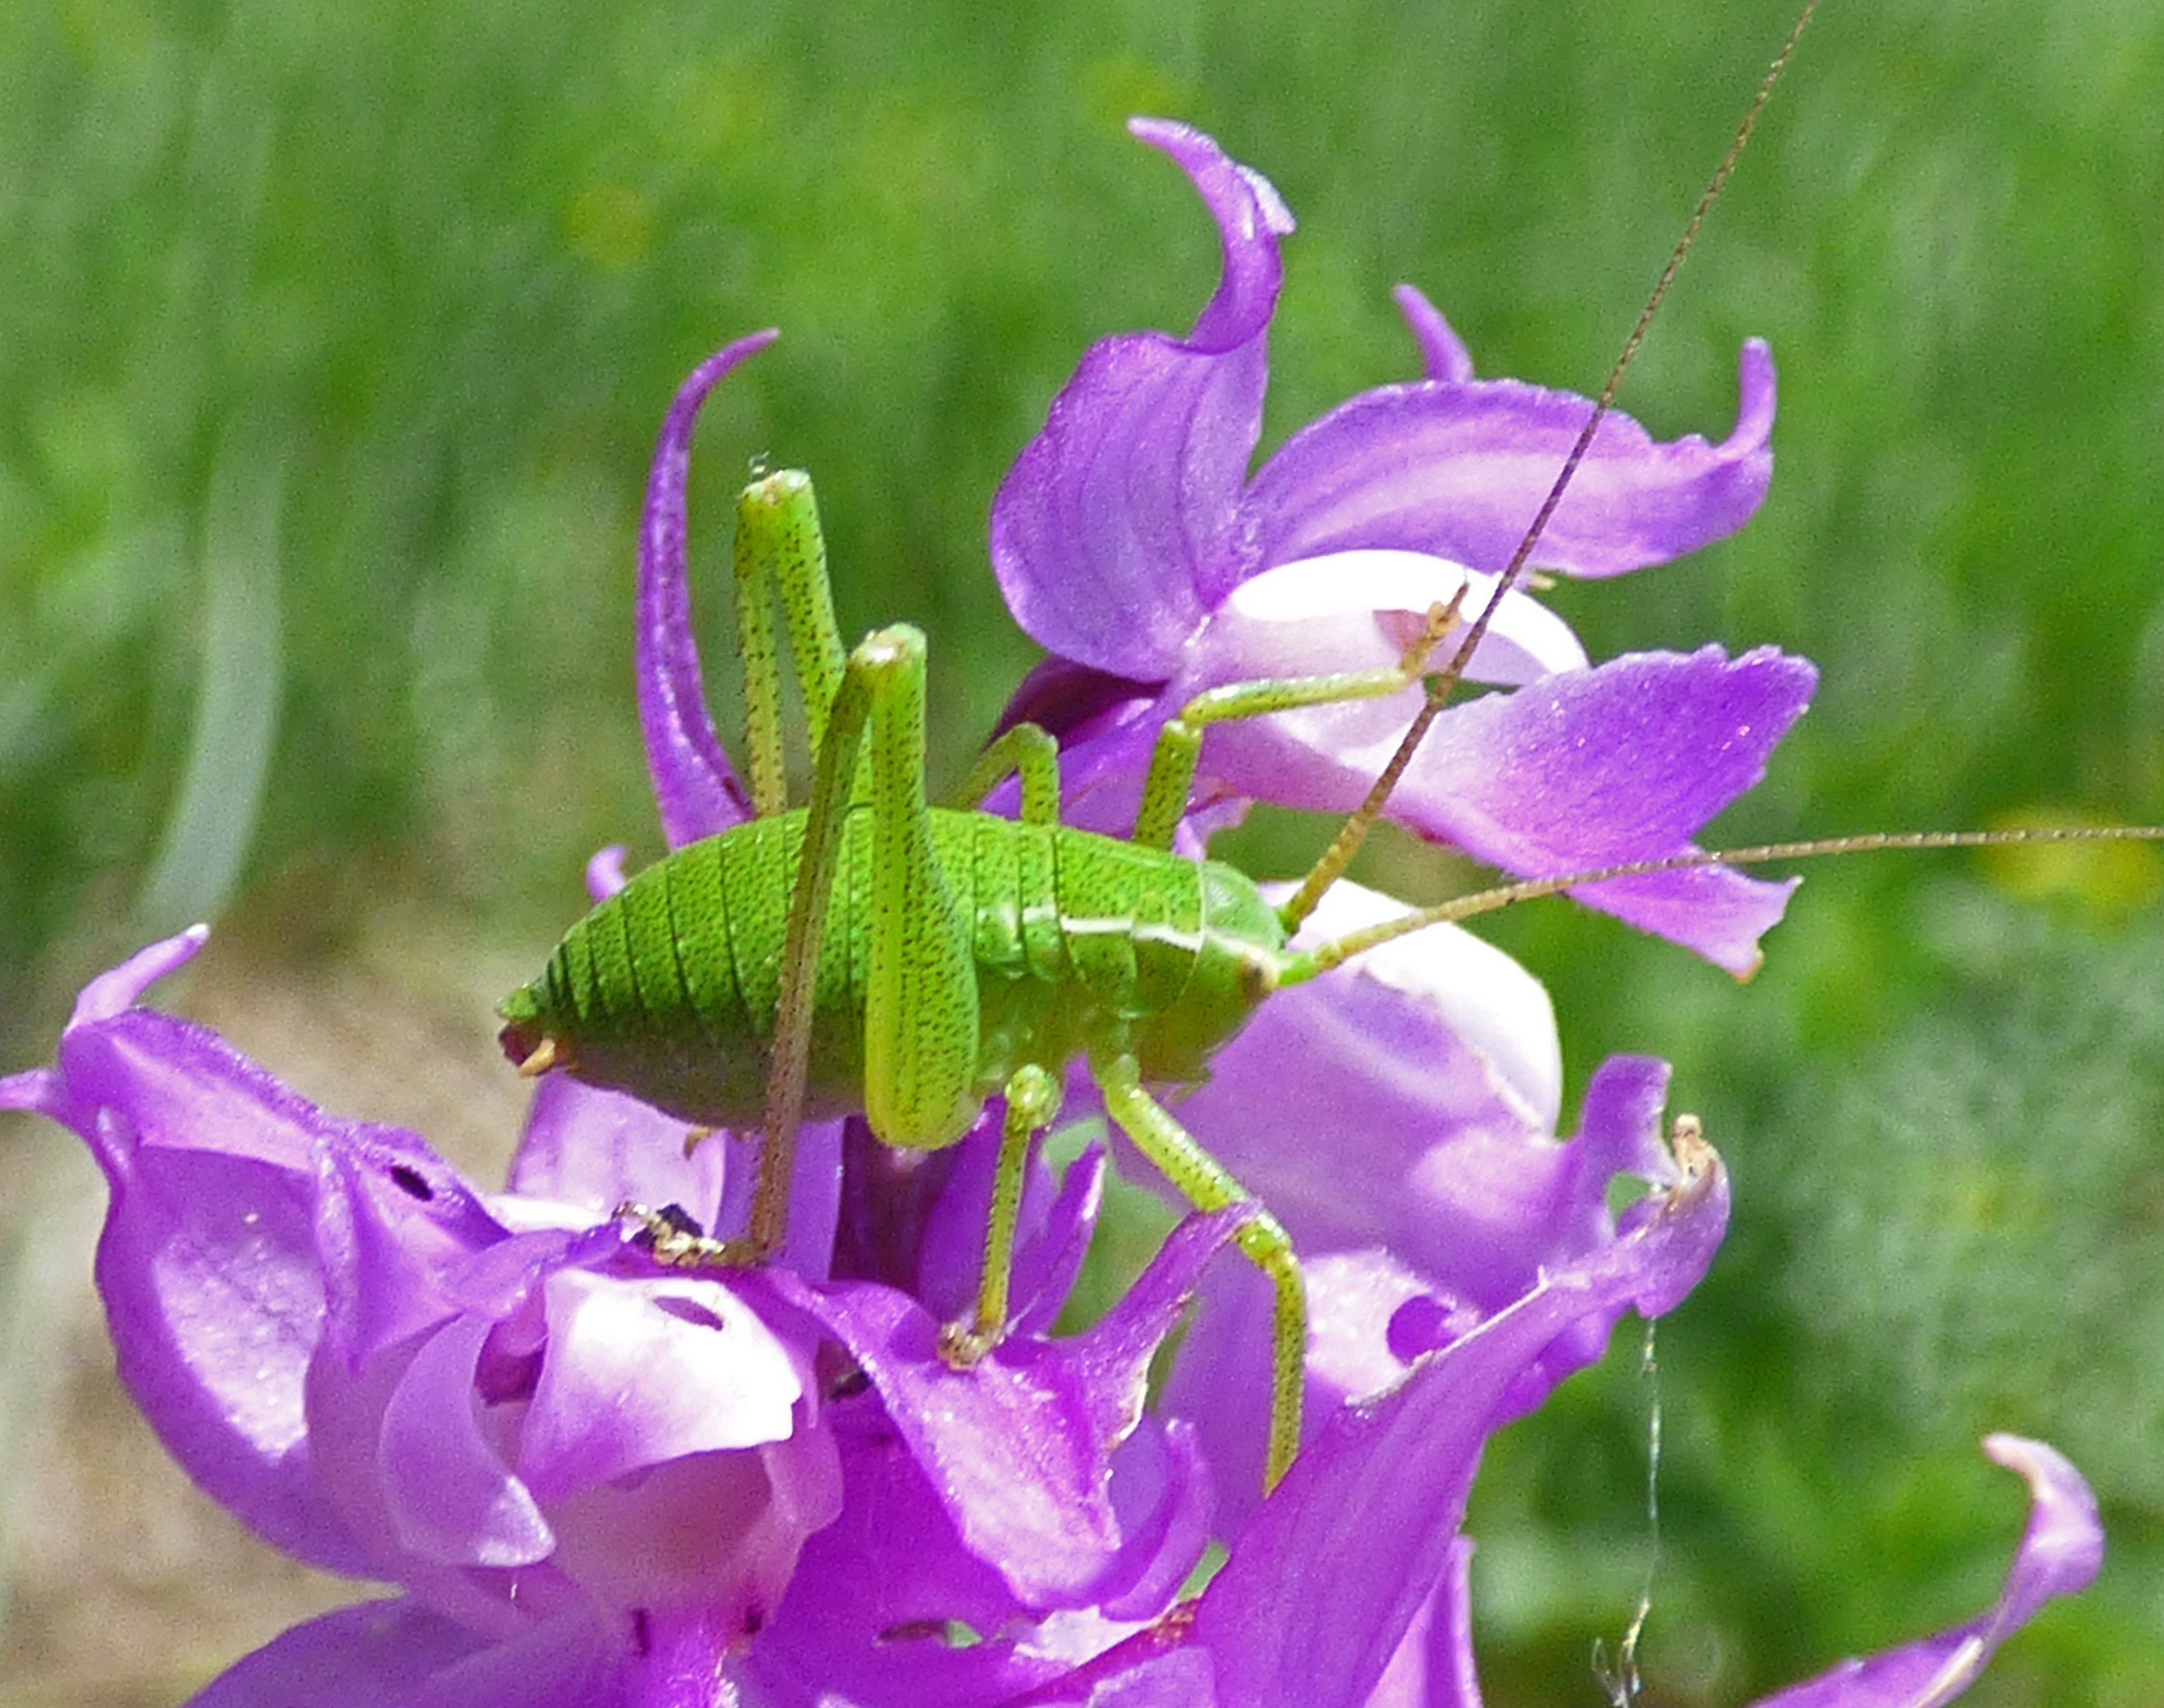 <i>Leptophyes punctatissima</i>; Speckled Bush-cricket